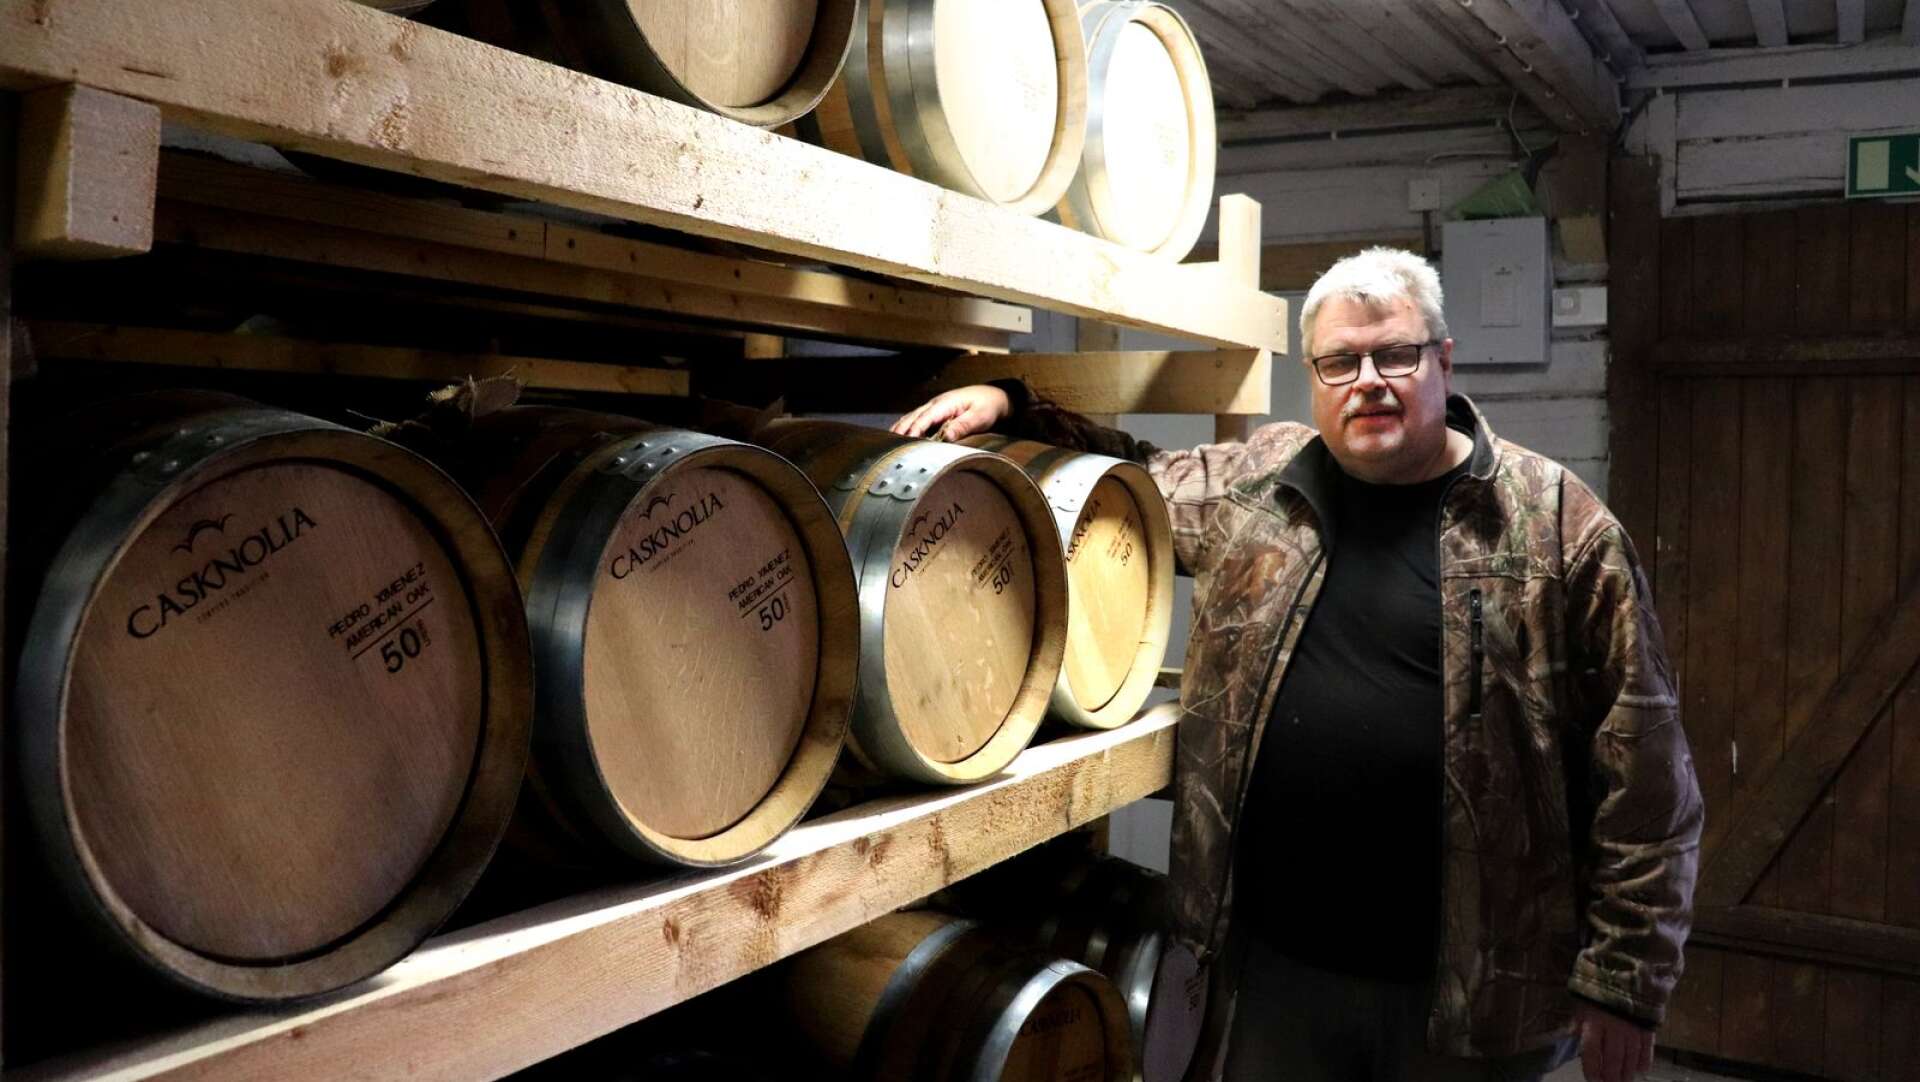 NWT besökte destilleriet vårvintern 2019, och då passade Morgan Svensson på att titta till whiskyfaten, varav några nu tappats på sitt innehåll.